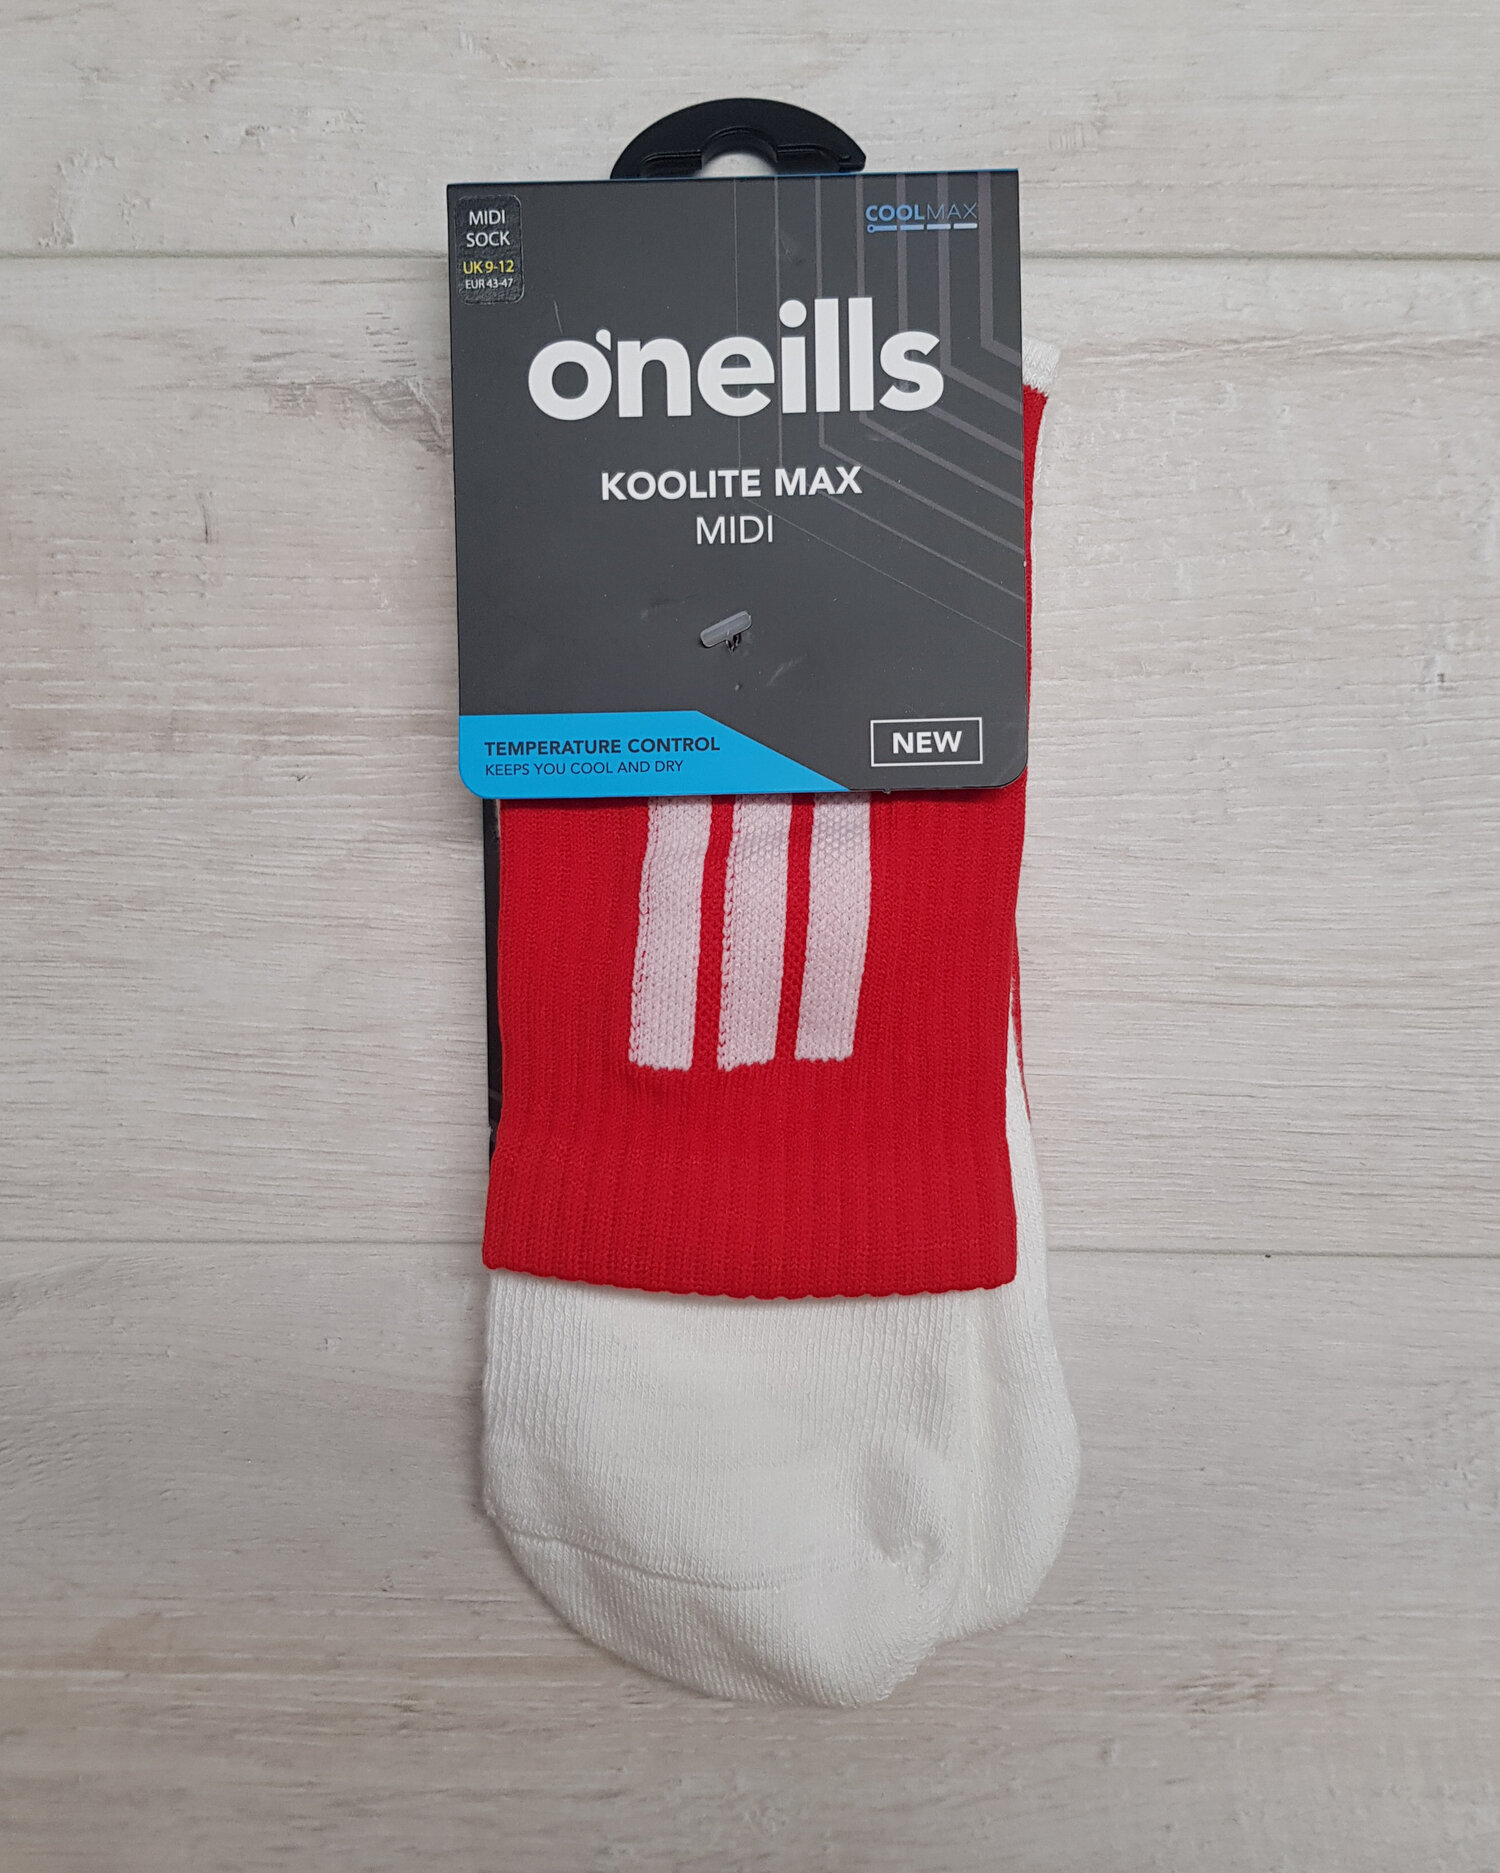 NEW O'Neill's Koolite MAX Midi Sock - Red/White — Begley's Sports